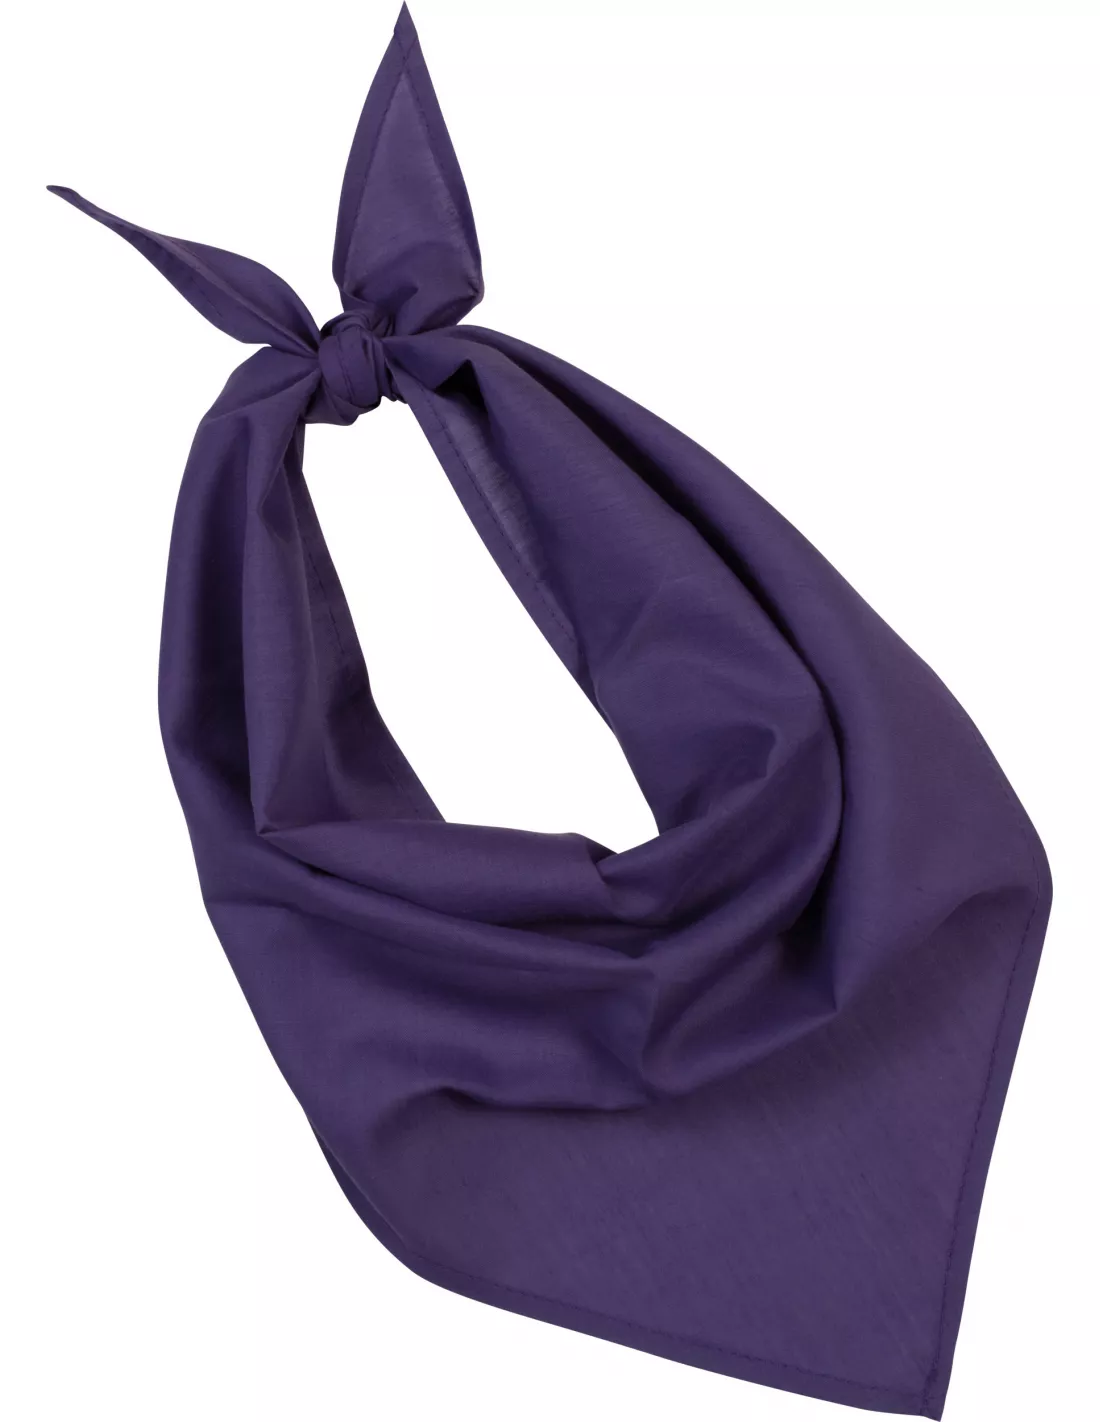 Pañuelo de cuello personalizado de color violeta para marchas feministas o eventos